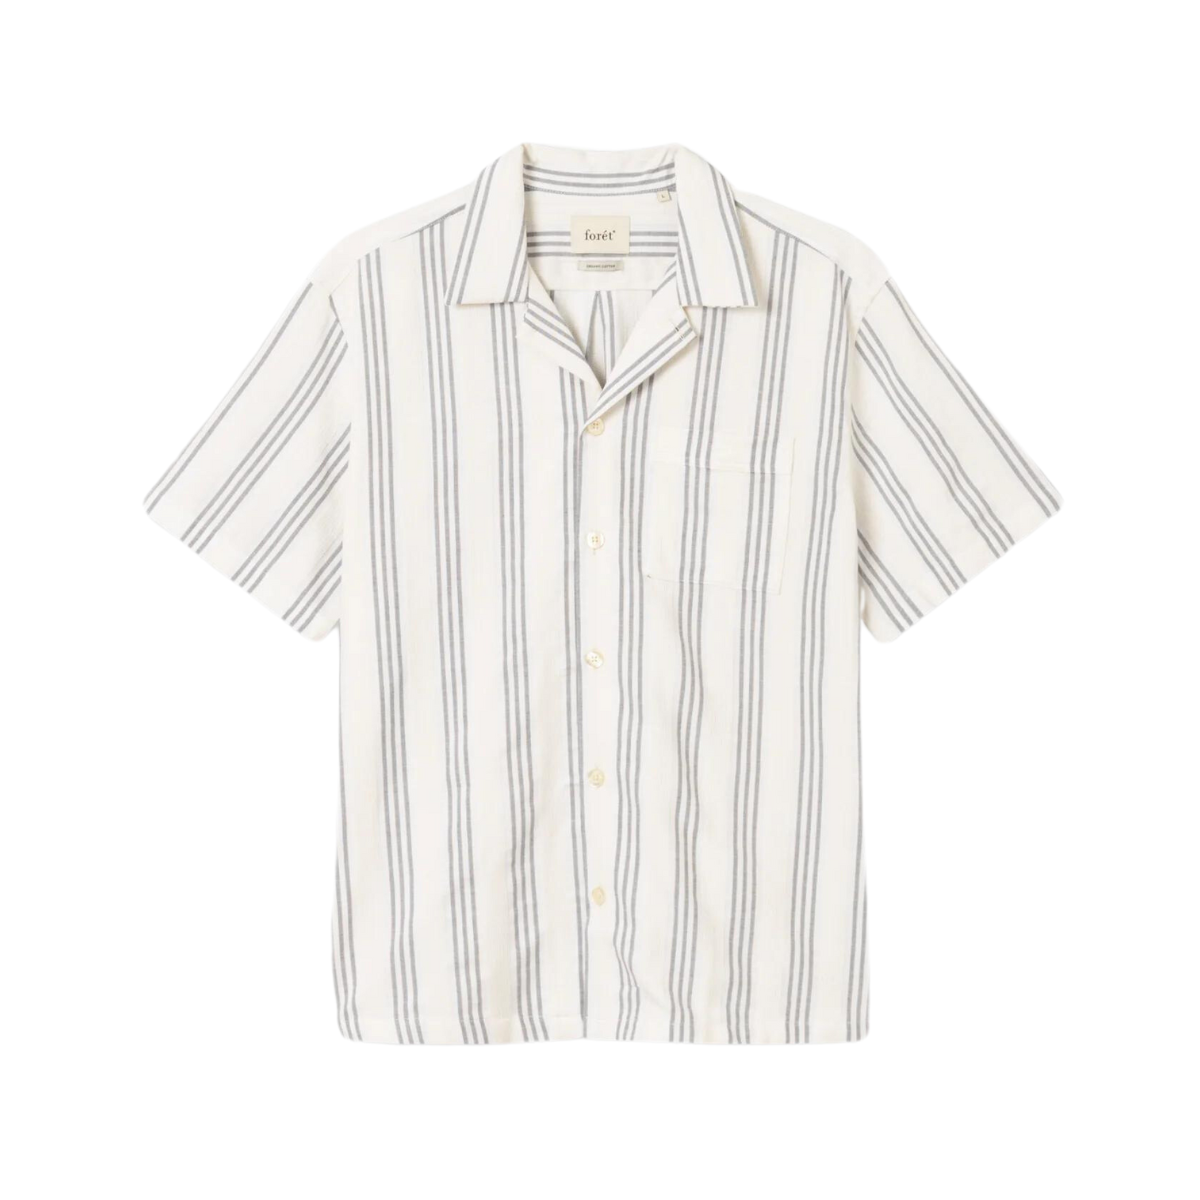 Foret | shirt for men - Twig Shirt | Navy/ Sandstone | kapok